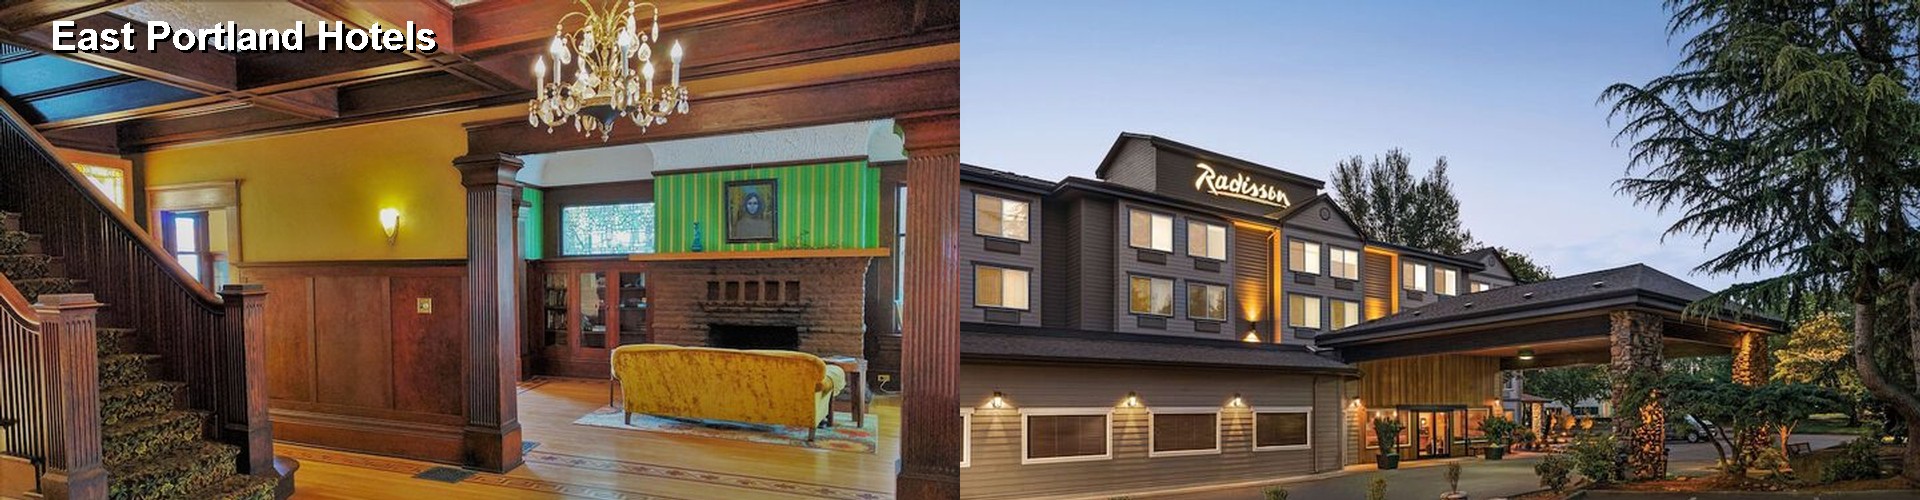 2 Best Hotels near East Portland